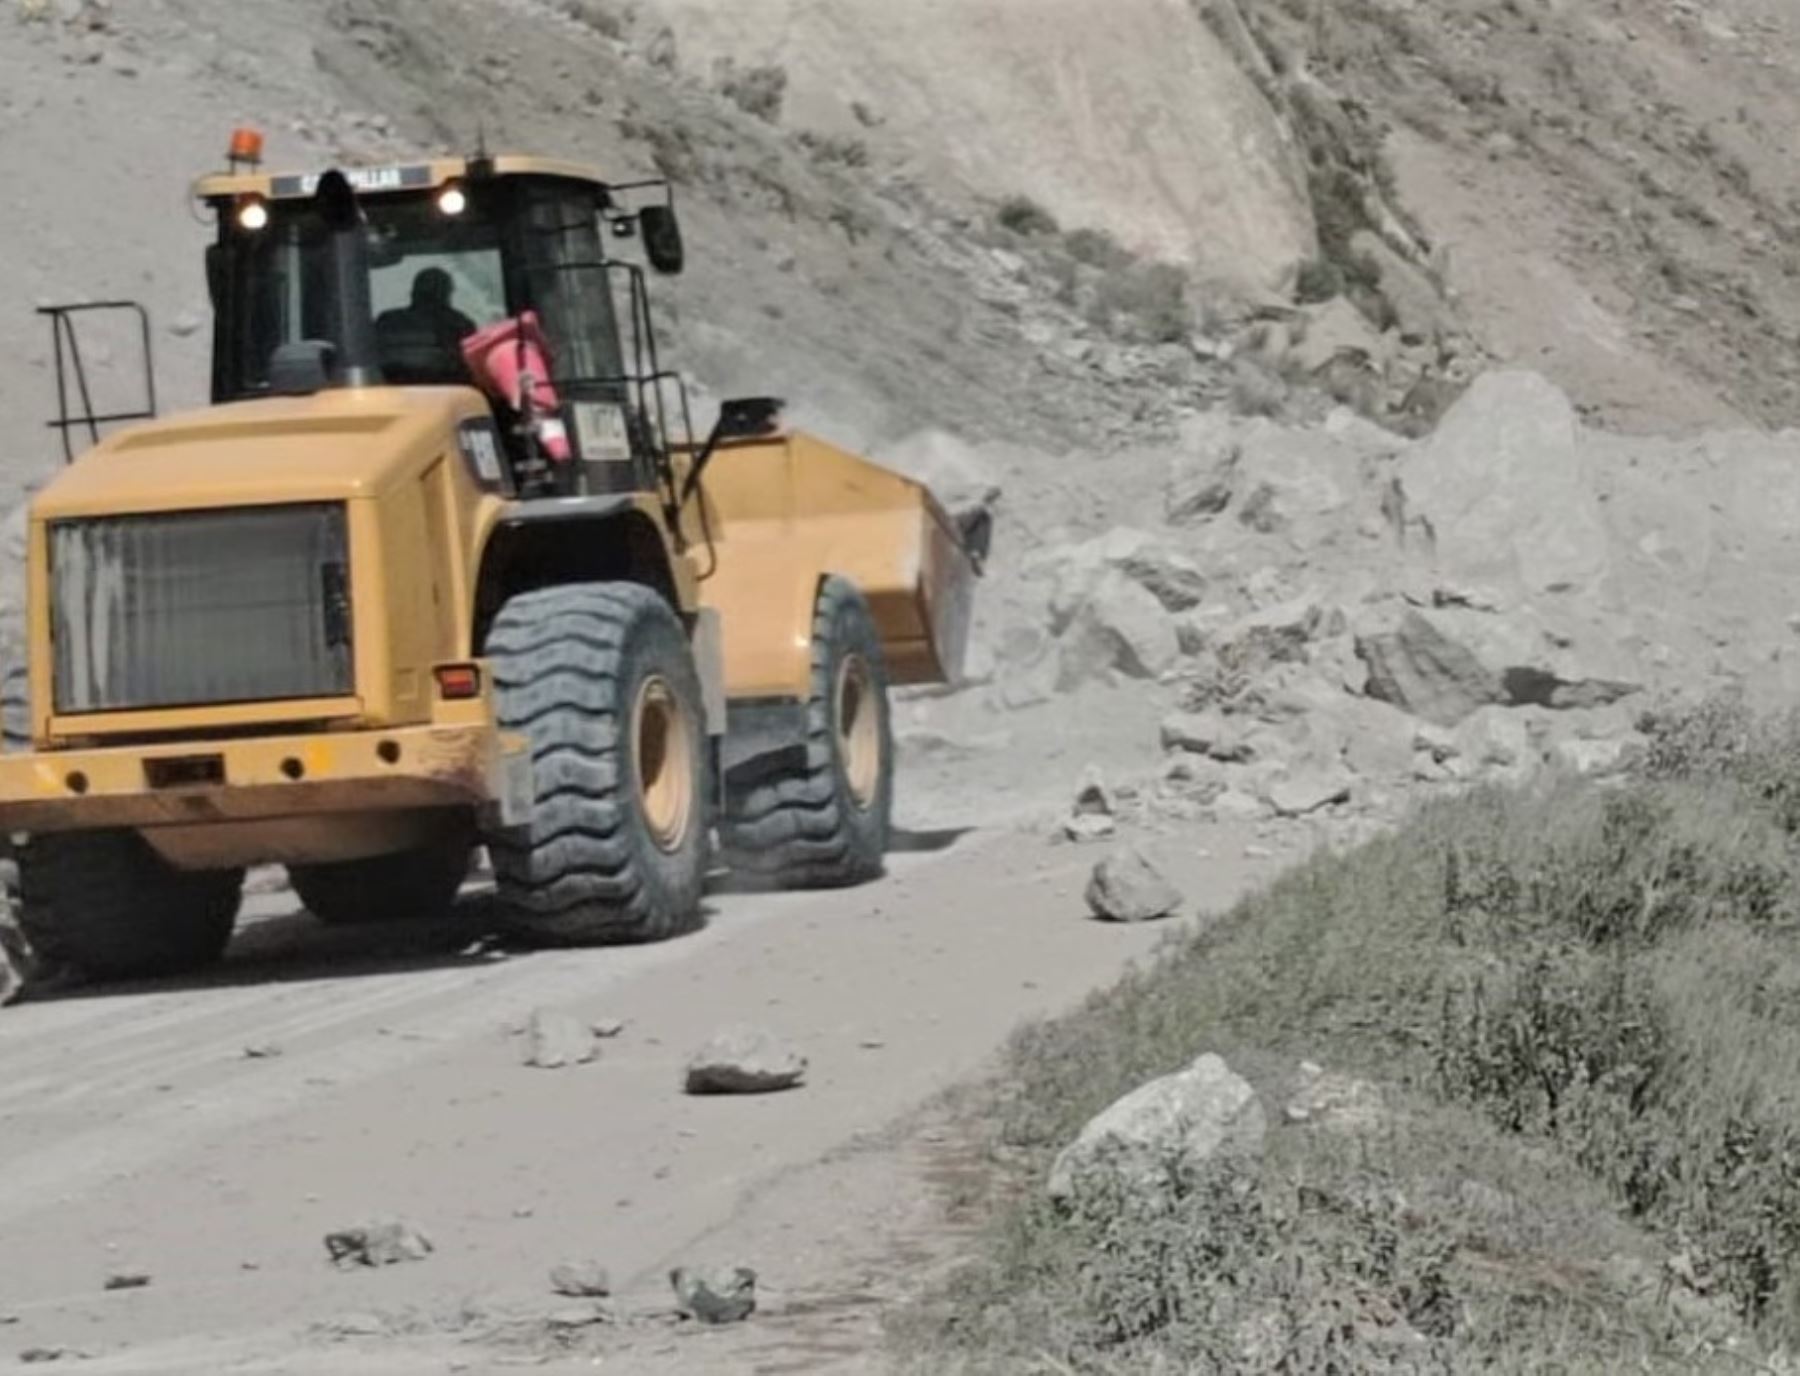 Continúan los trabajos de limpieza en la carretera de la provincia arequipeña de Caylloma afectada por continuos sismos. Foto: ANDINA/difusión.